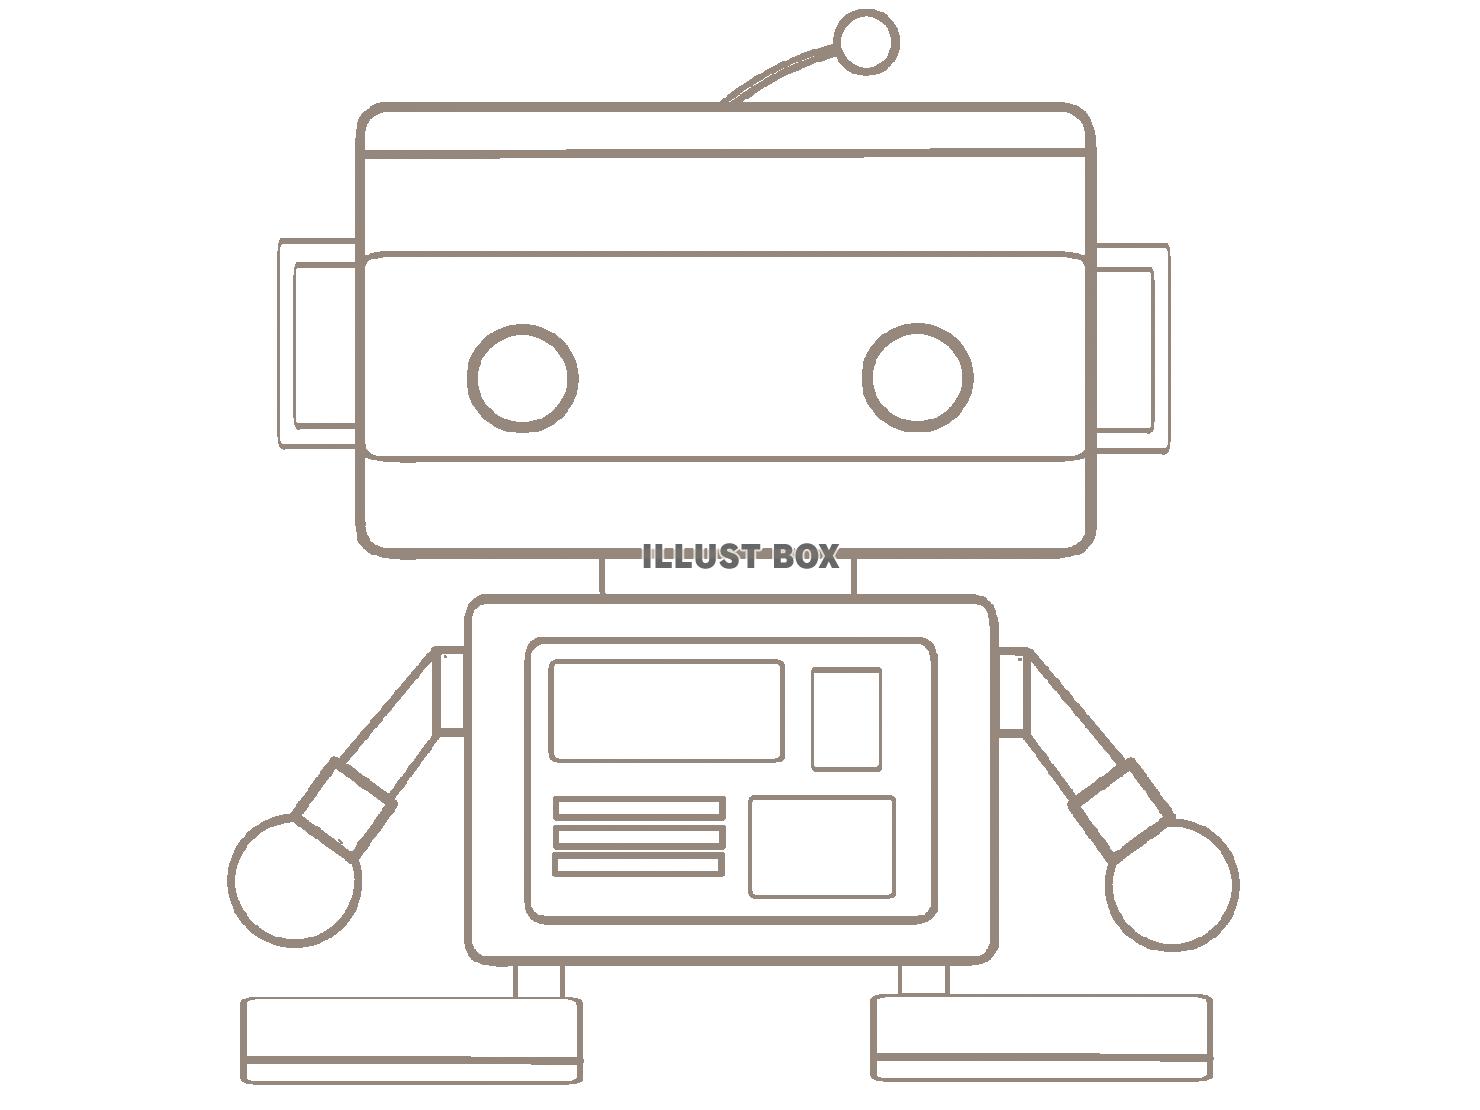 25 ゆるい ロボット イラスト 簡単 Josspicturezbylq